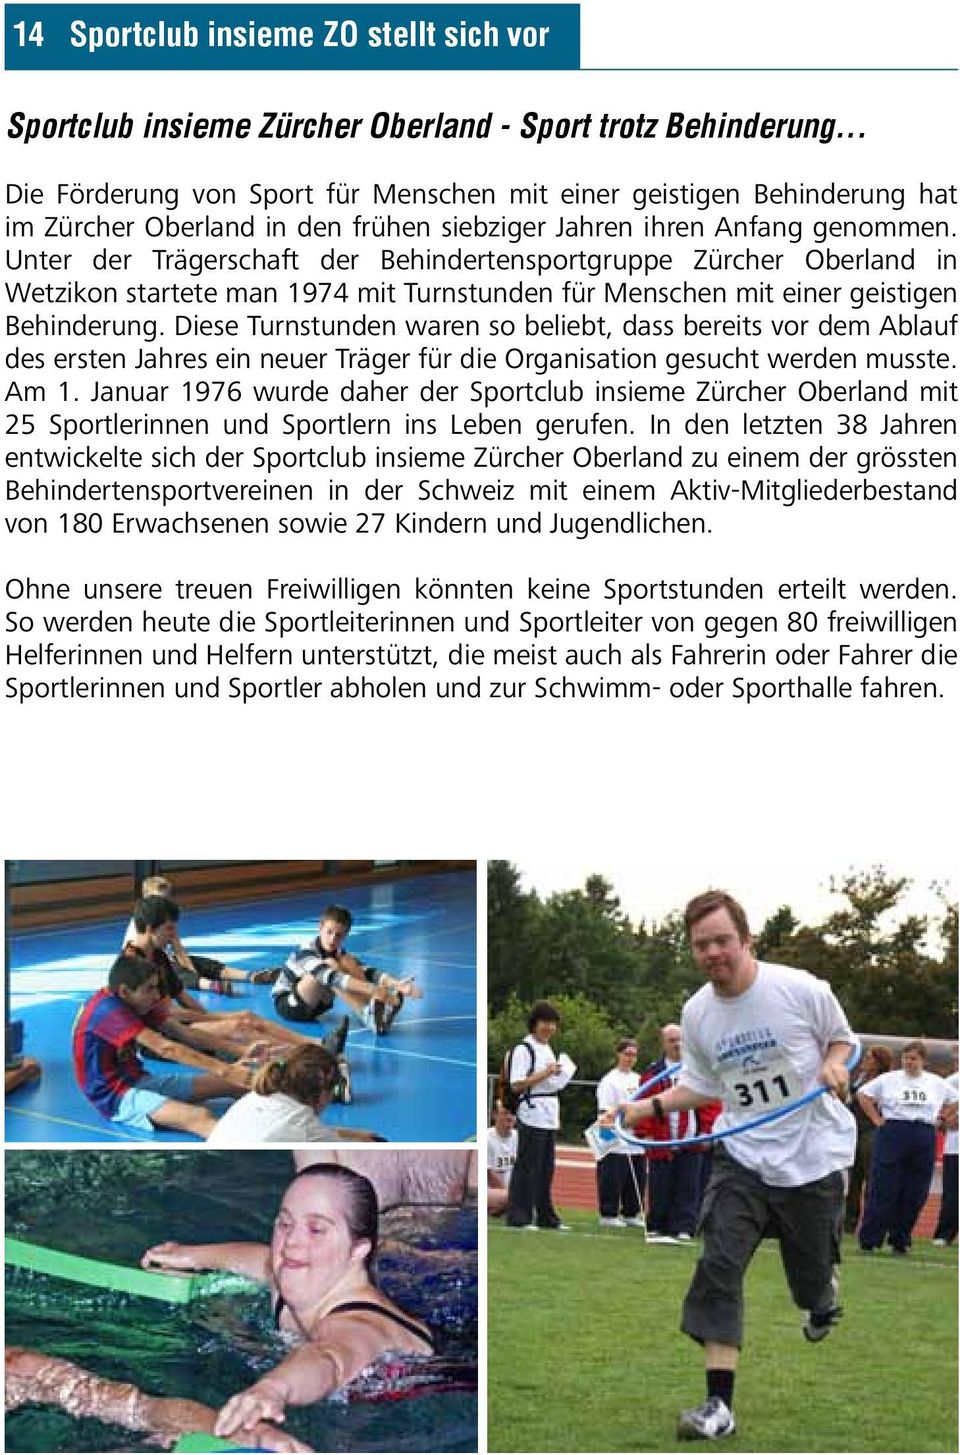 Unter der Trägerschaft der Behindertensportgruppe Zürcher Oberland in Wetzikon startete man 1974 mit Turnstunden für Menschen mit einer geistigen Behinderung.